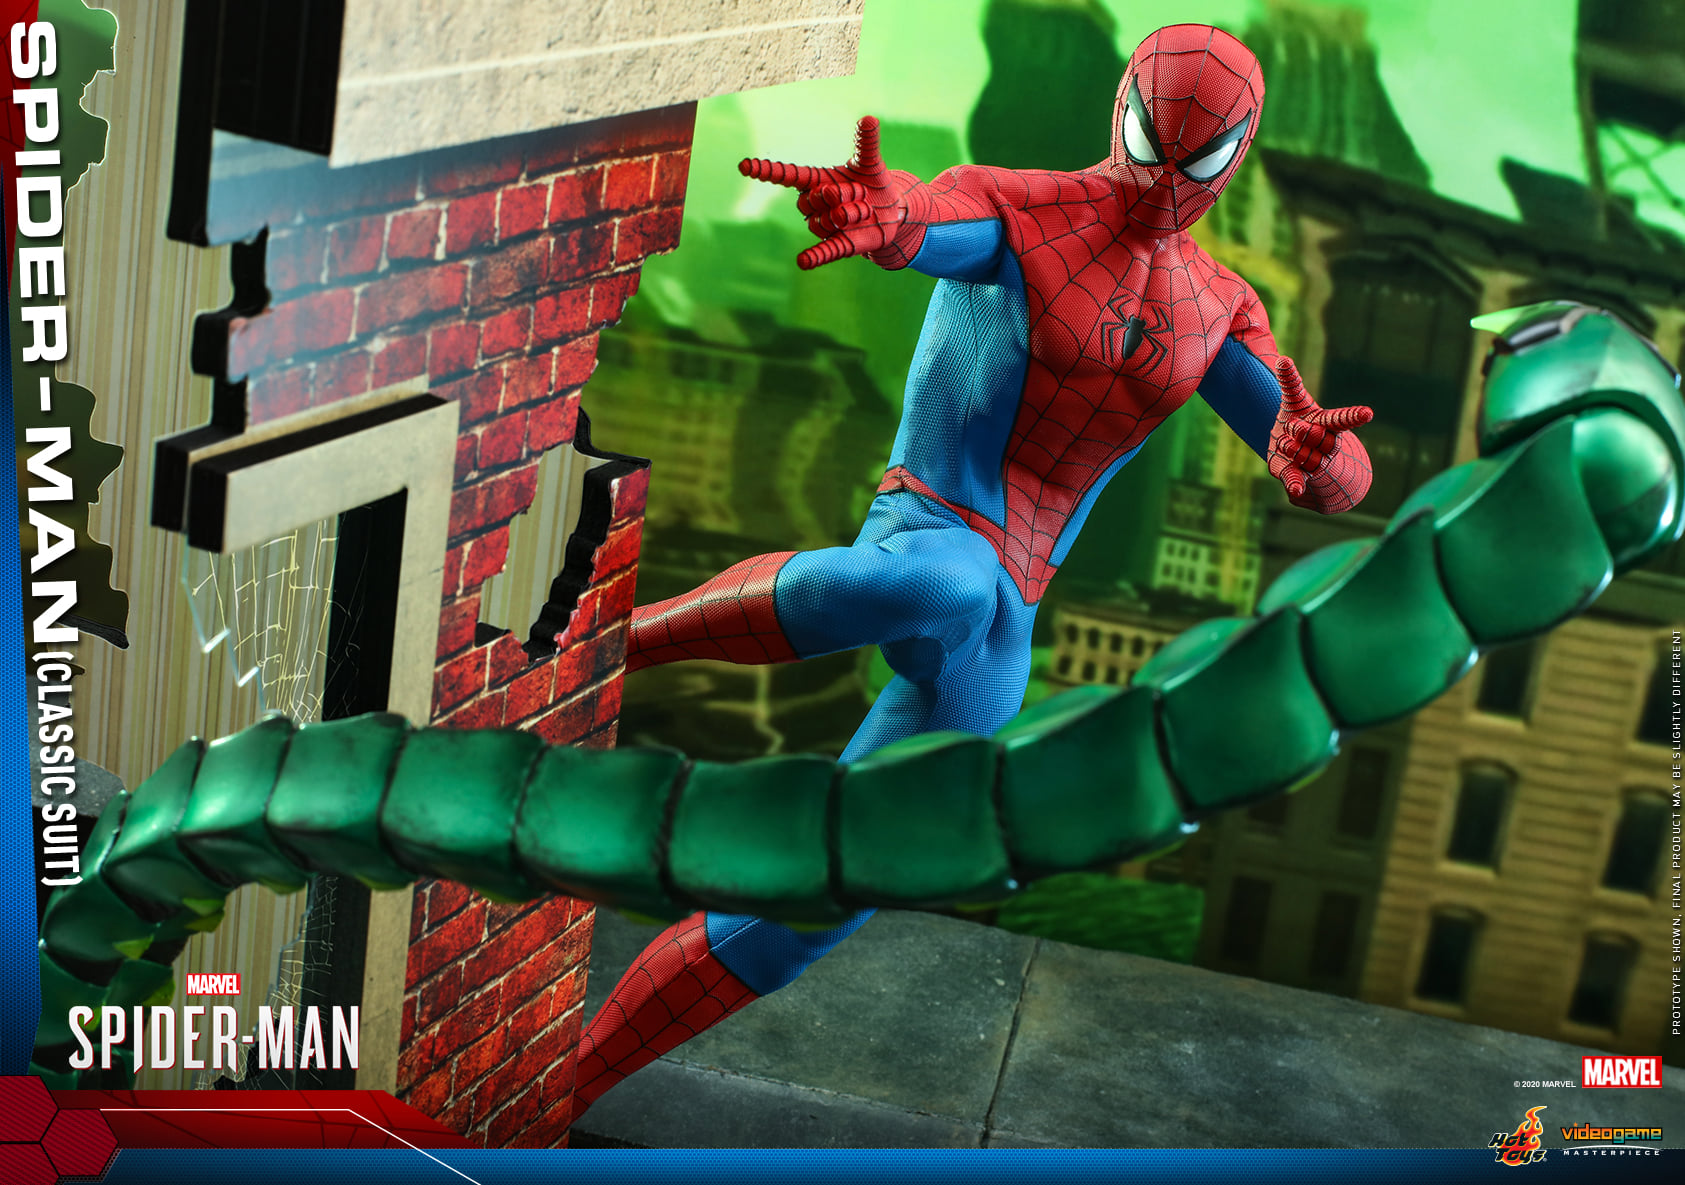 Classic Suit Spider-Man